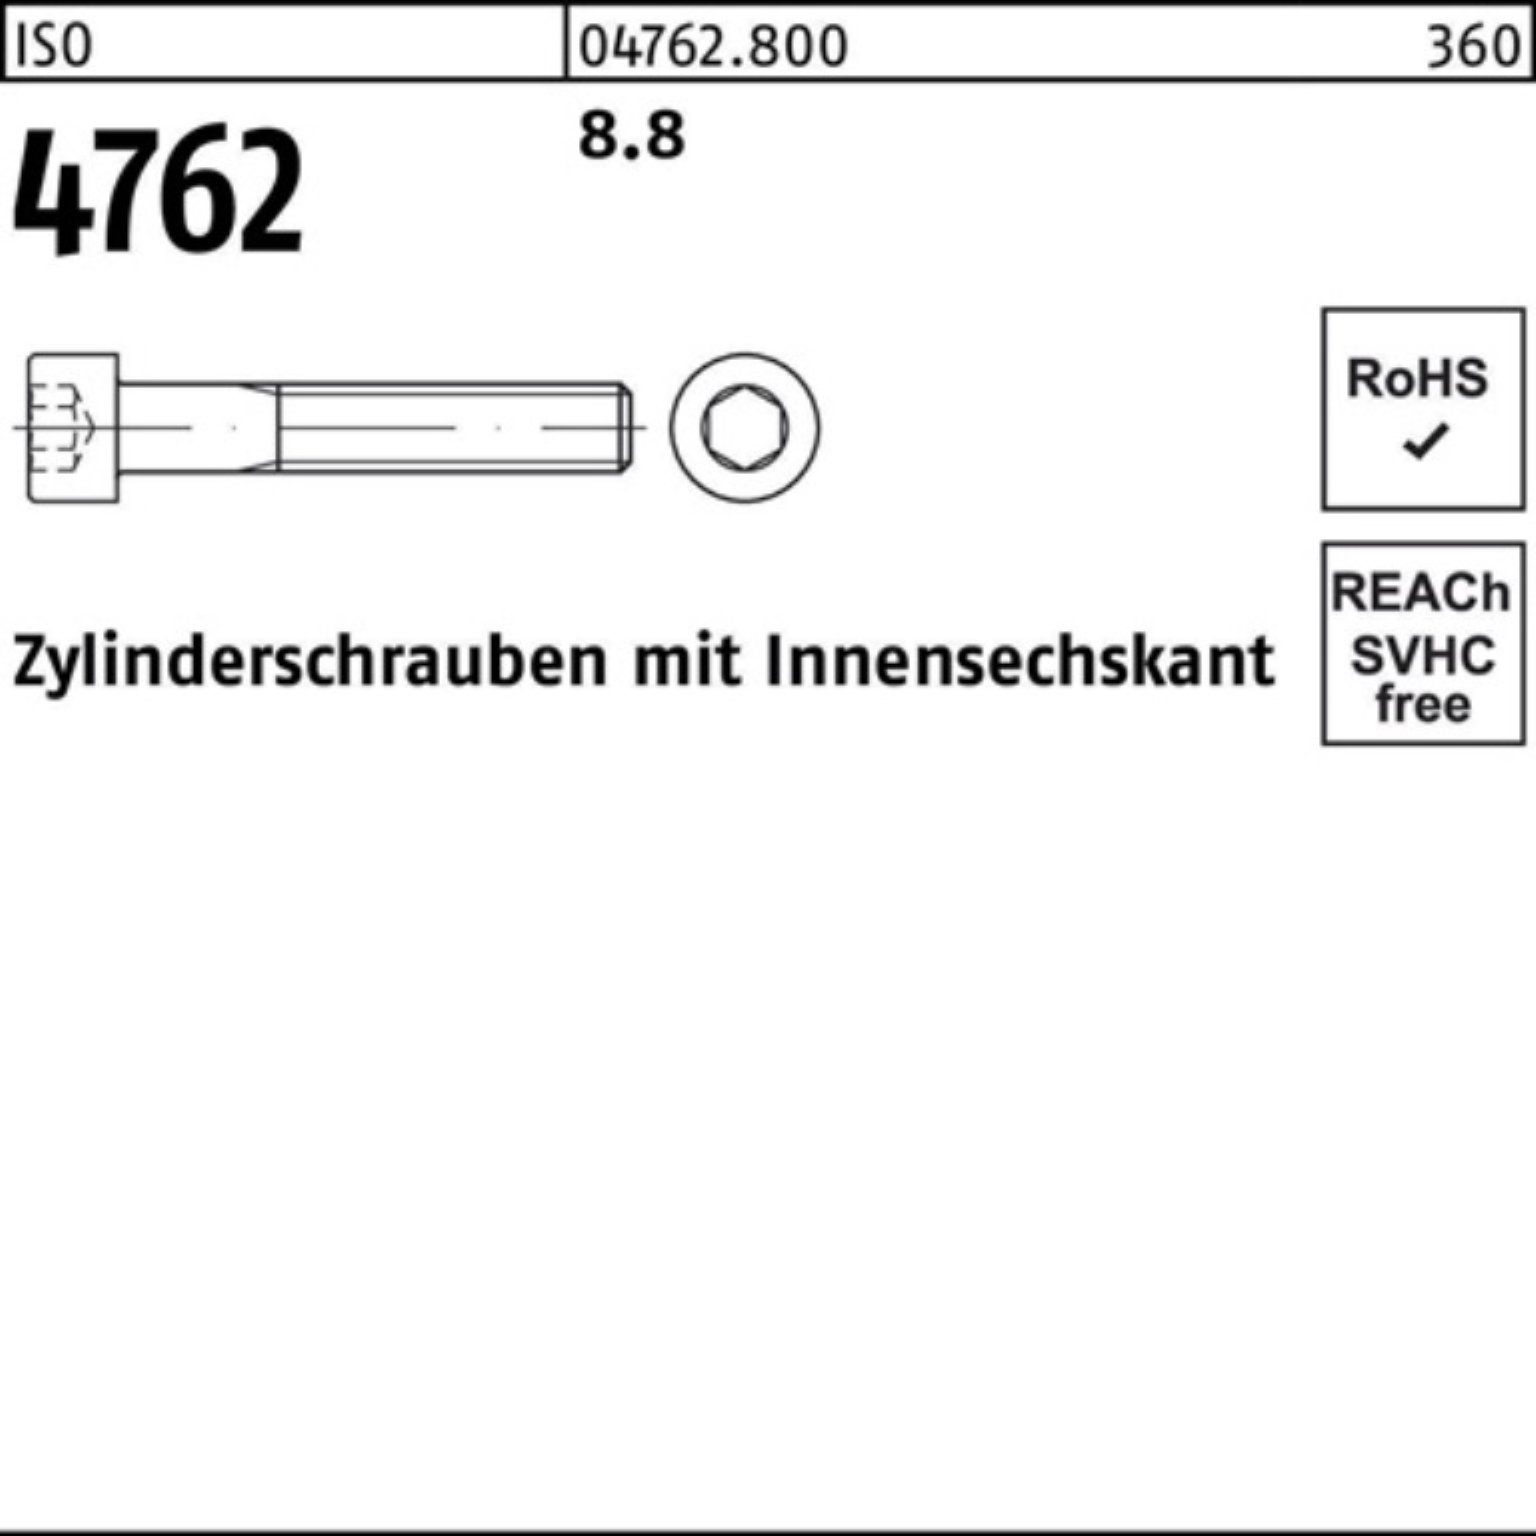 4762 Pack Reyher Innen-6kt 1 Zylinderschraube 8.8 M36x 100er ISO Stück Zylinderschraube I 380